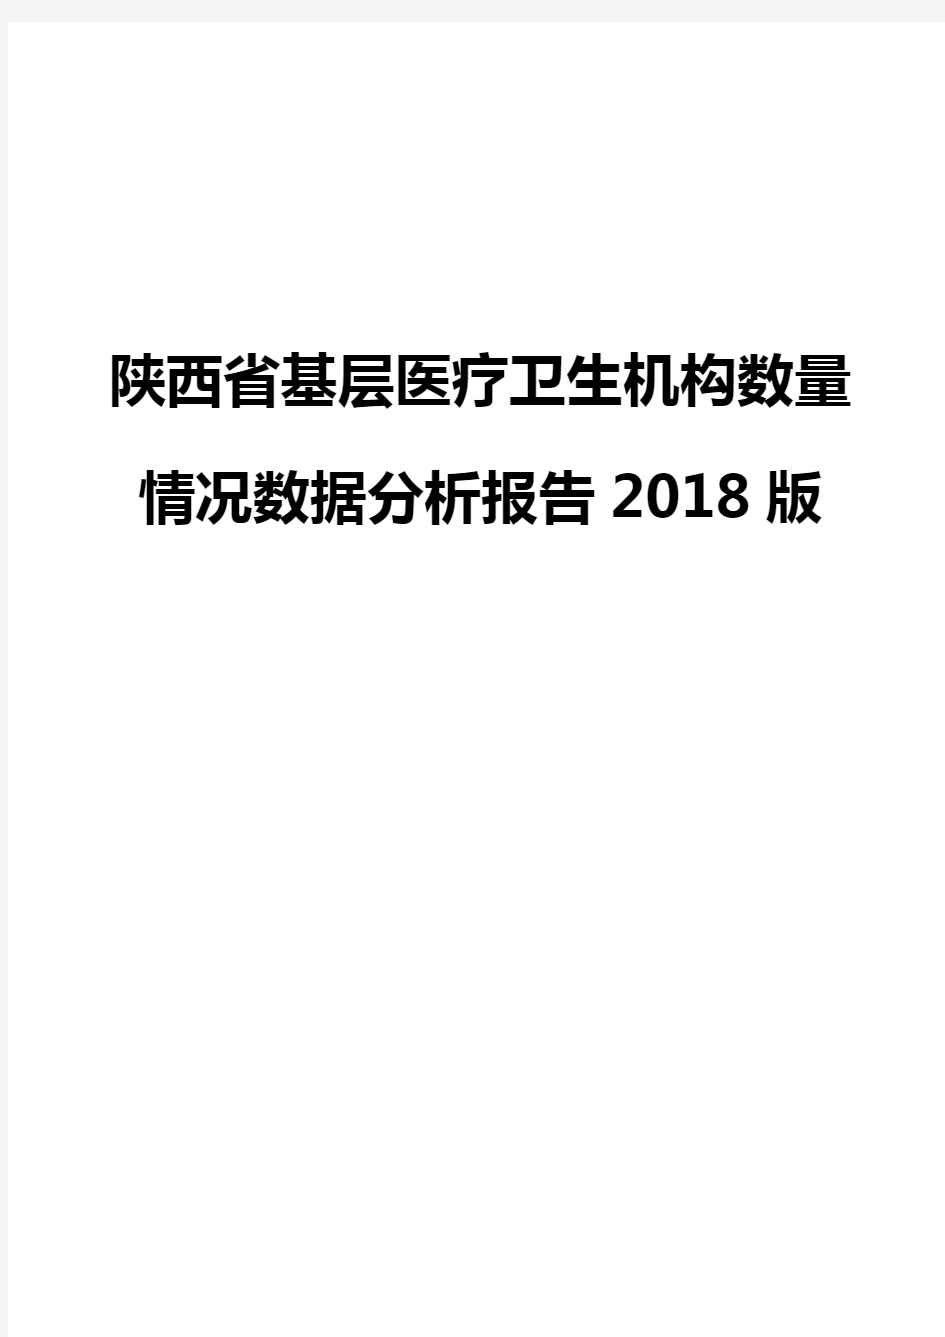 陕西省基层医疗卫生机构数量情况数据分析报告2018版